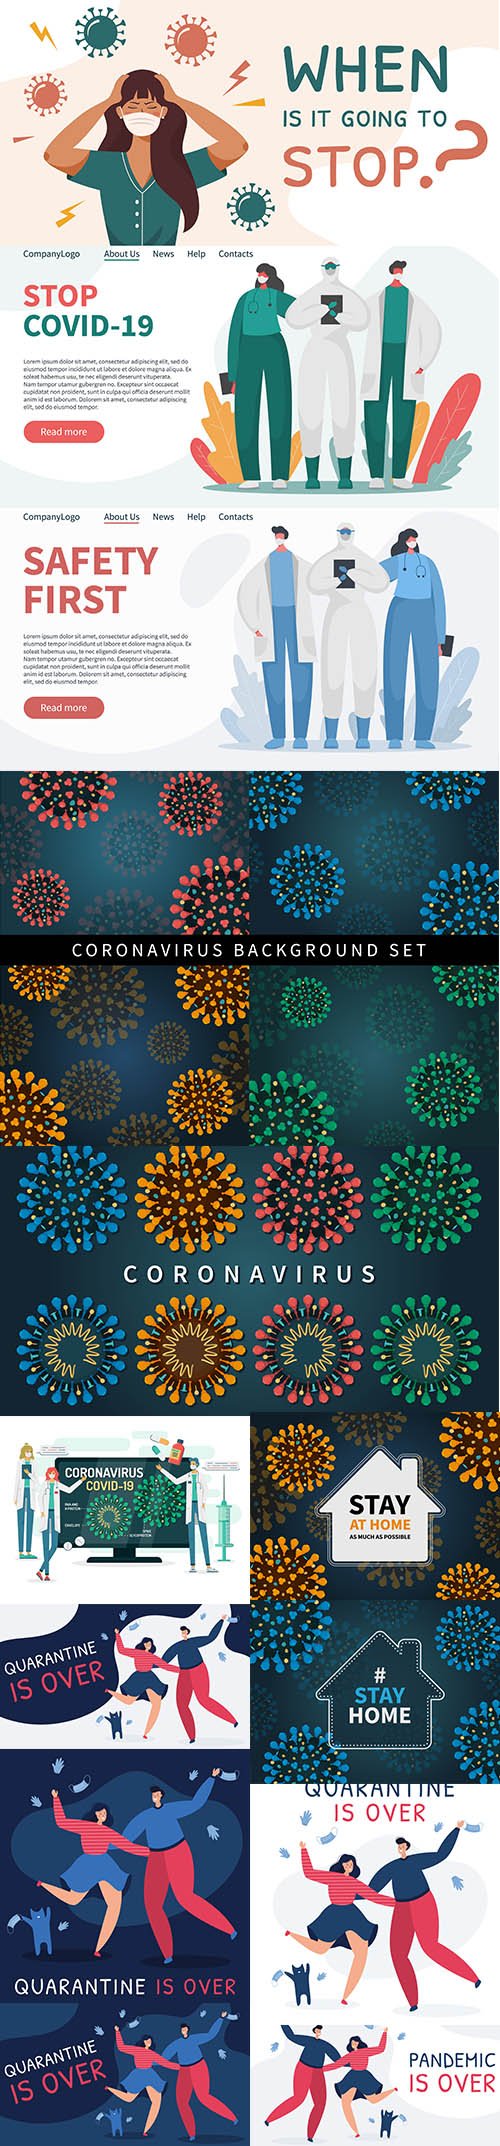 Coronavirus covid 19 background